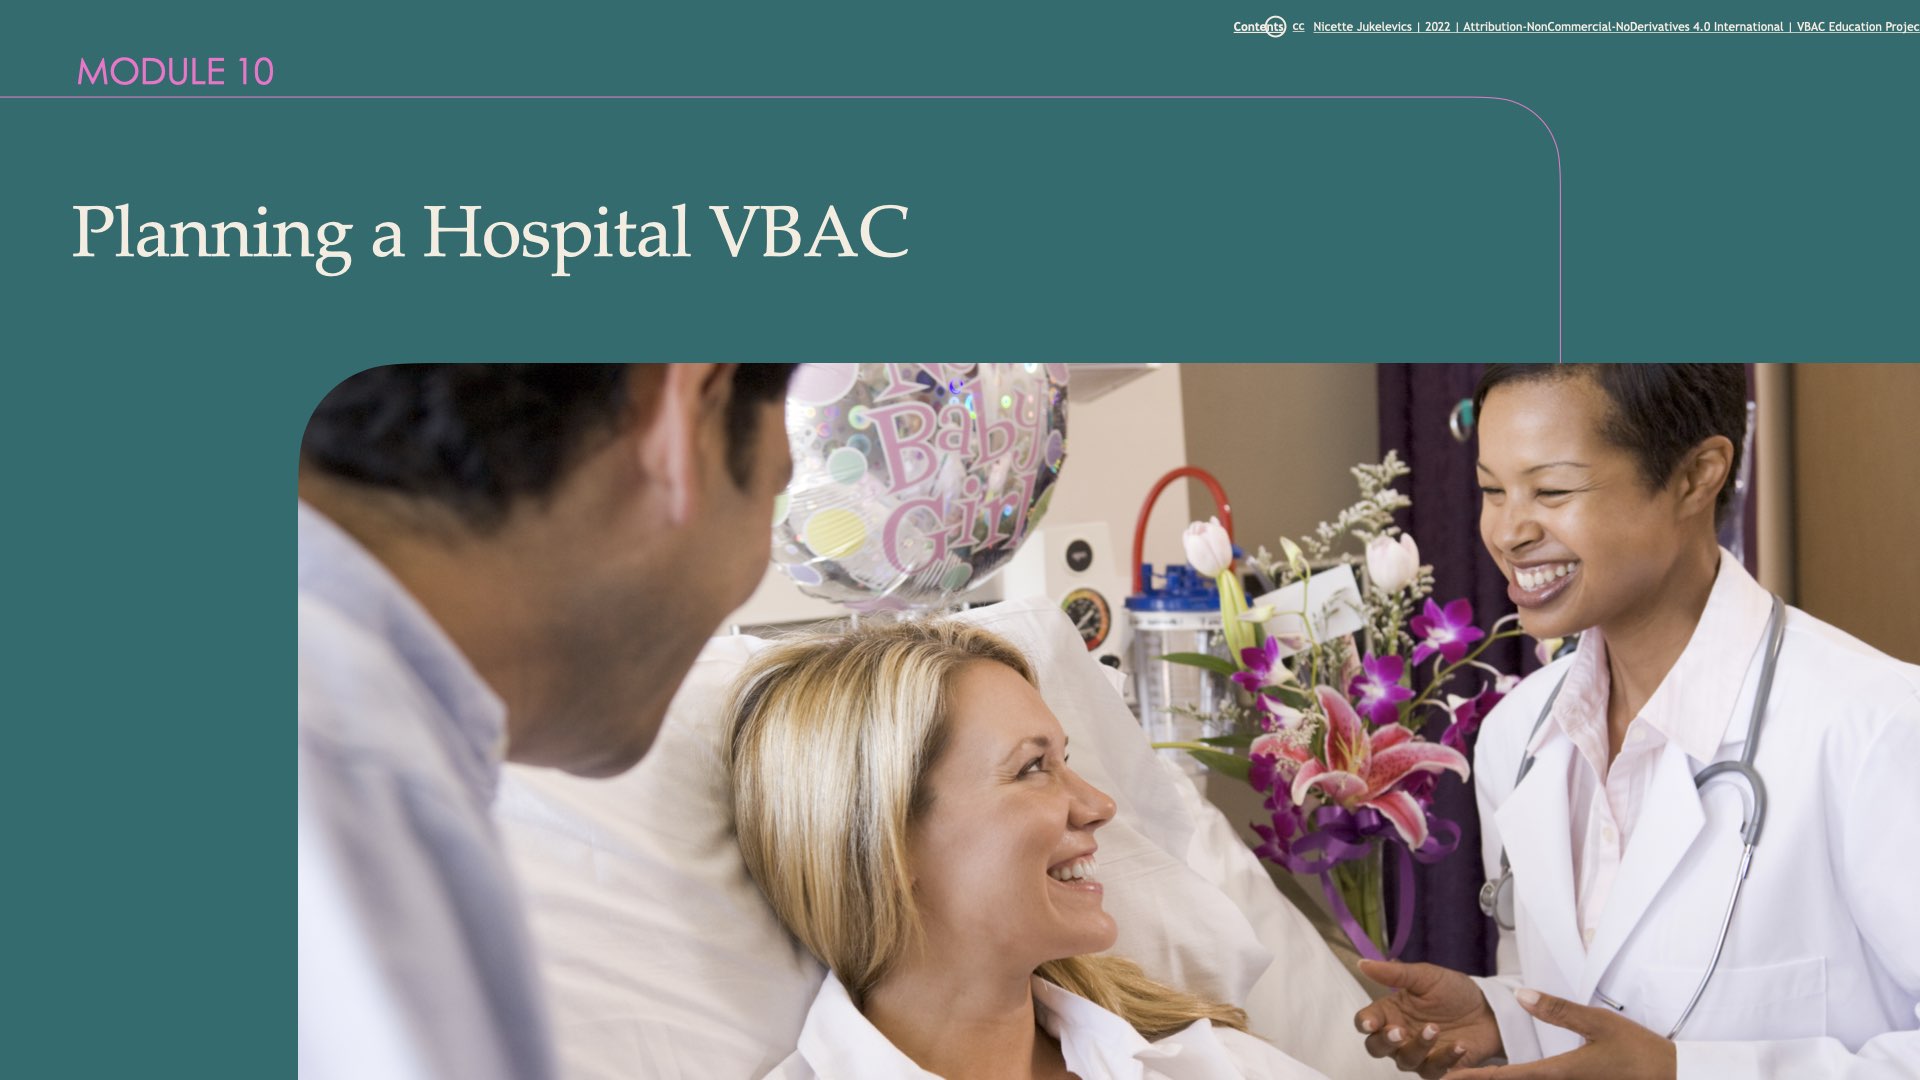 Module 10: Planning a Hospital VBAC